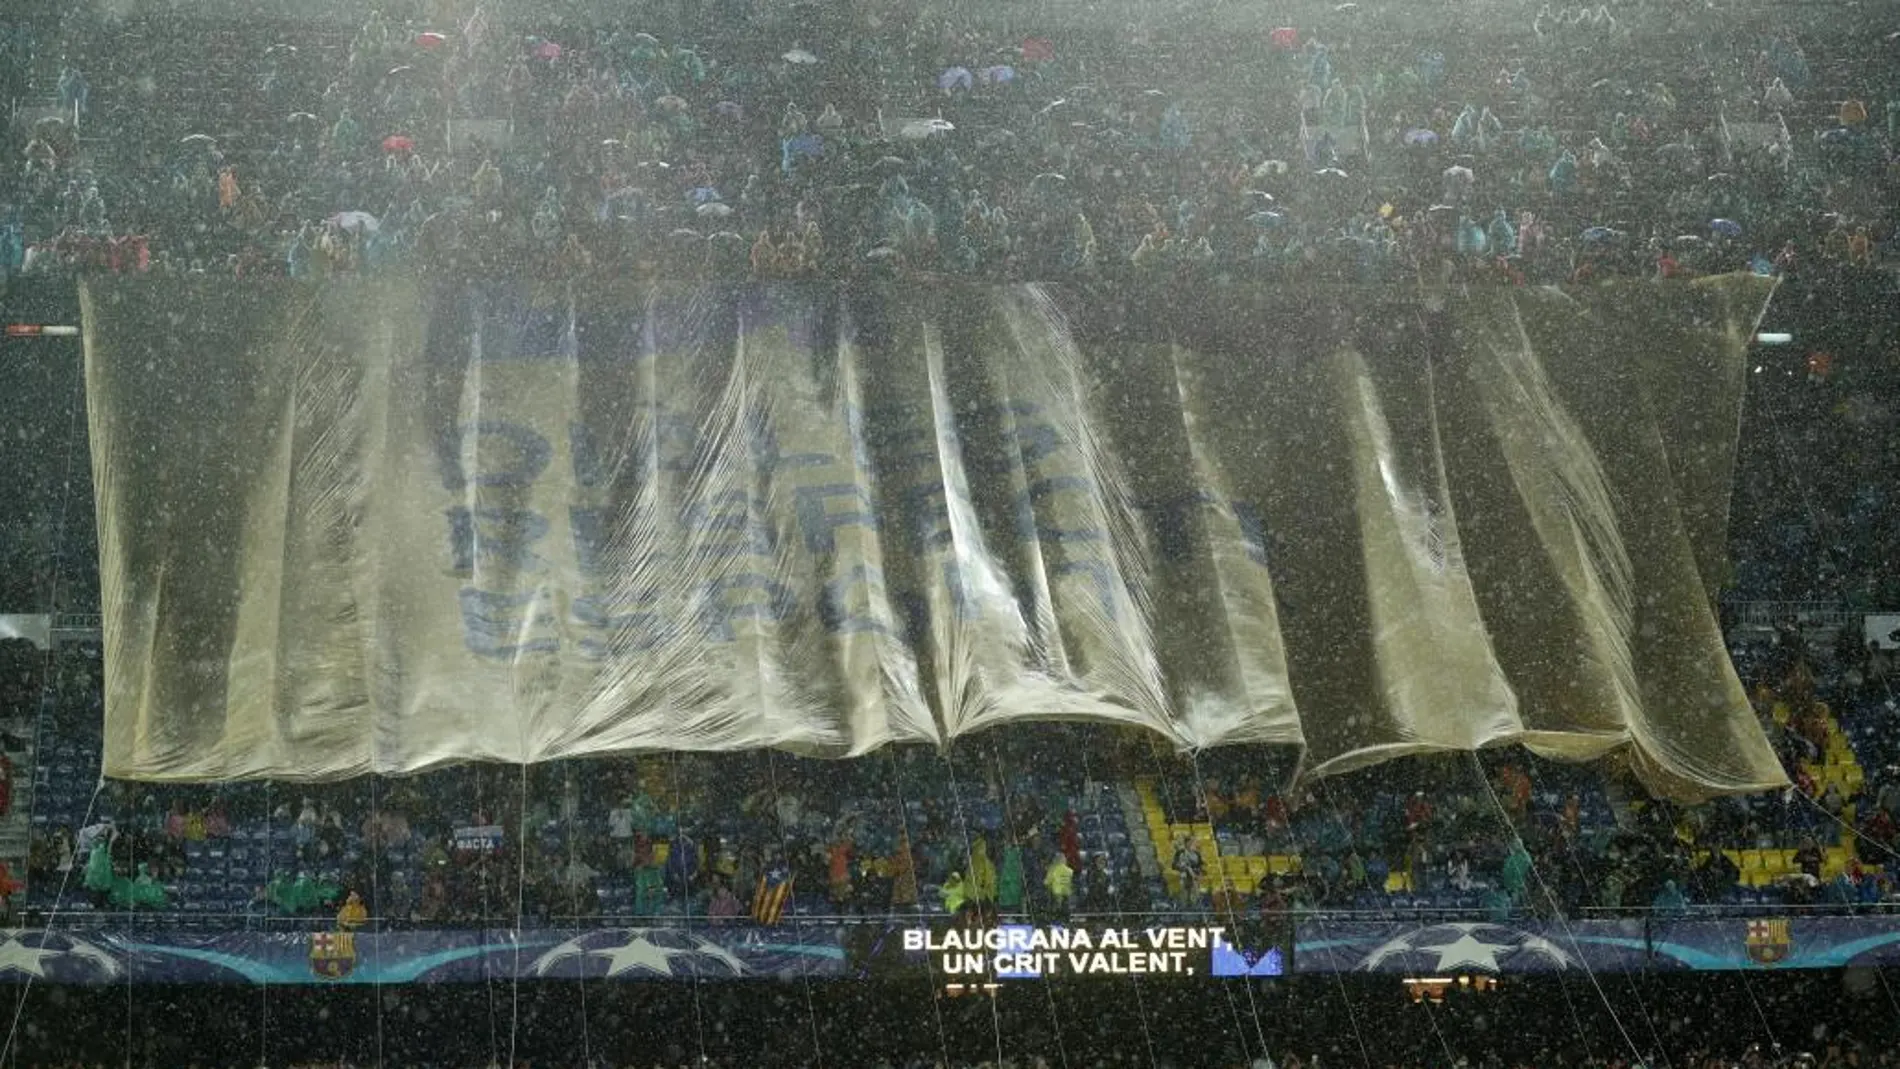 Imagen de la pancarta desplegada en el Camp Nou en la que se podía leer “Diálogo, Respeto, Deporte”.REUTERS/Albert Gea